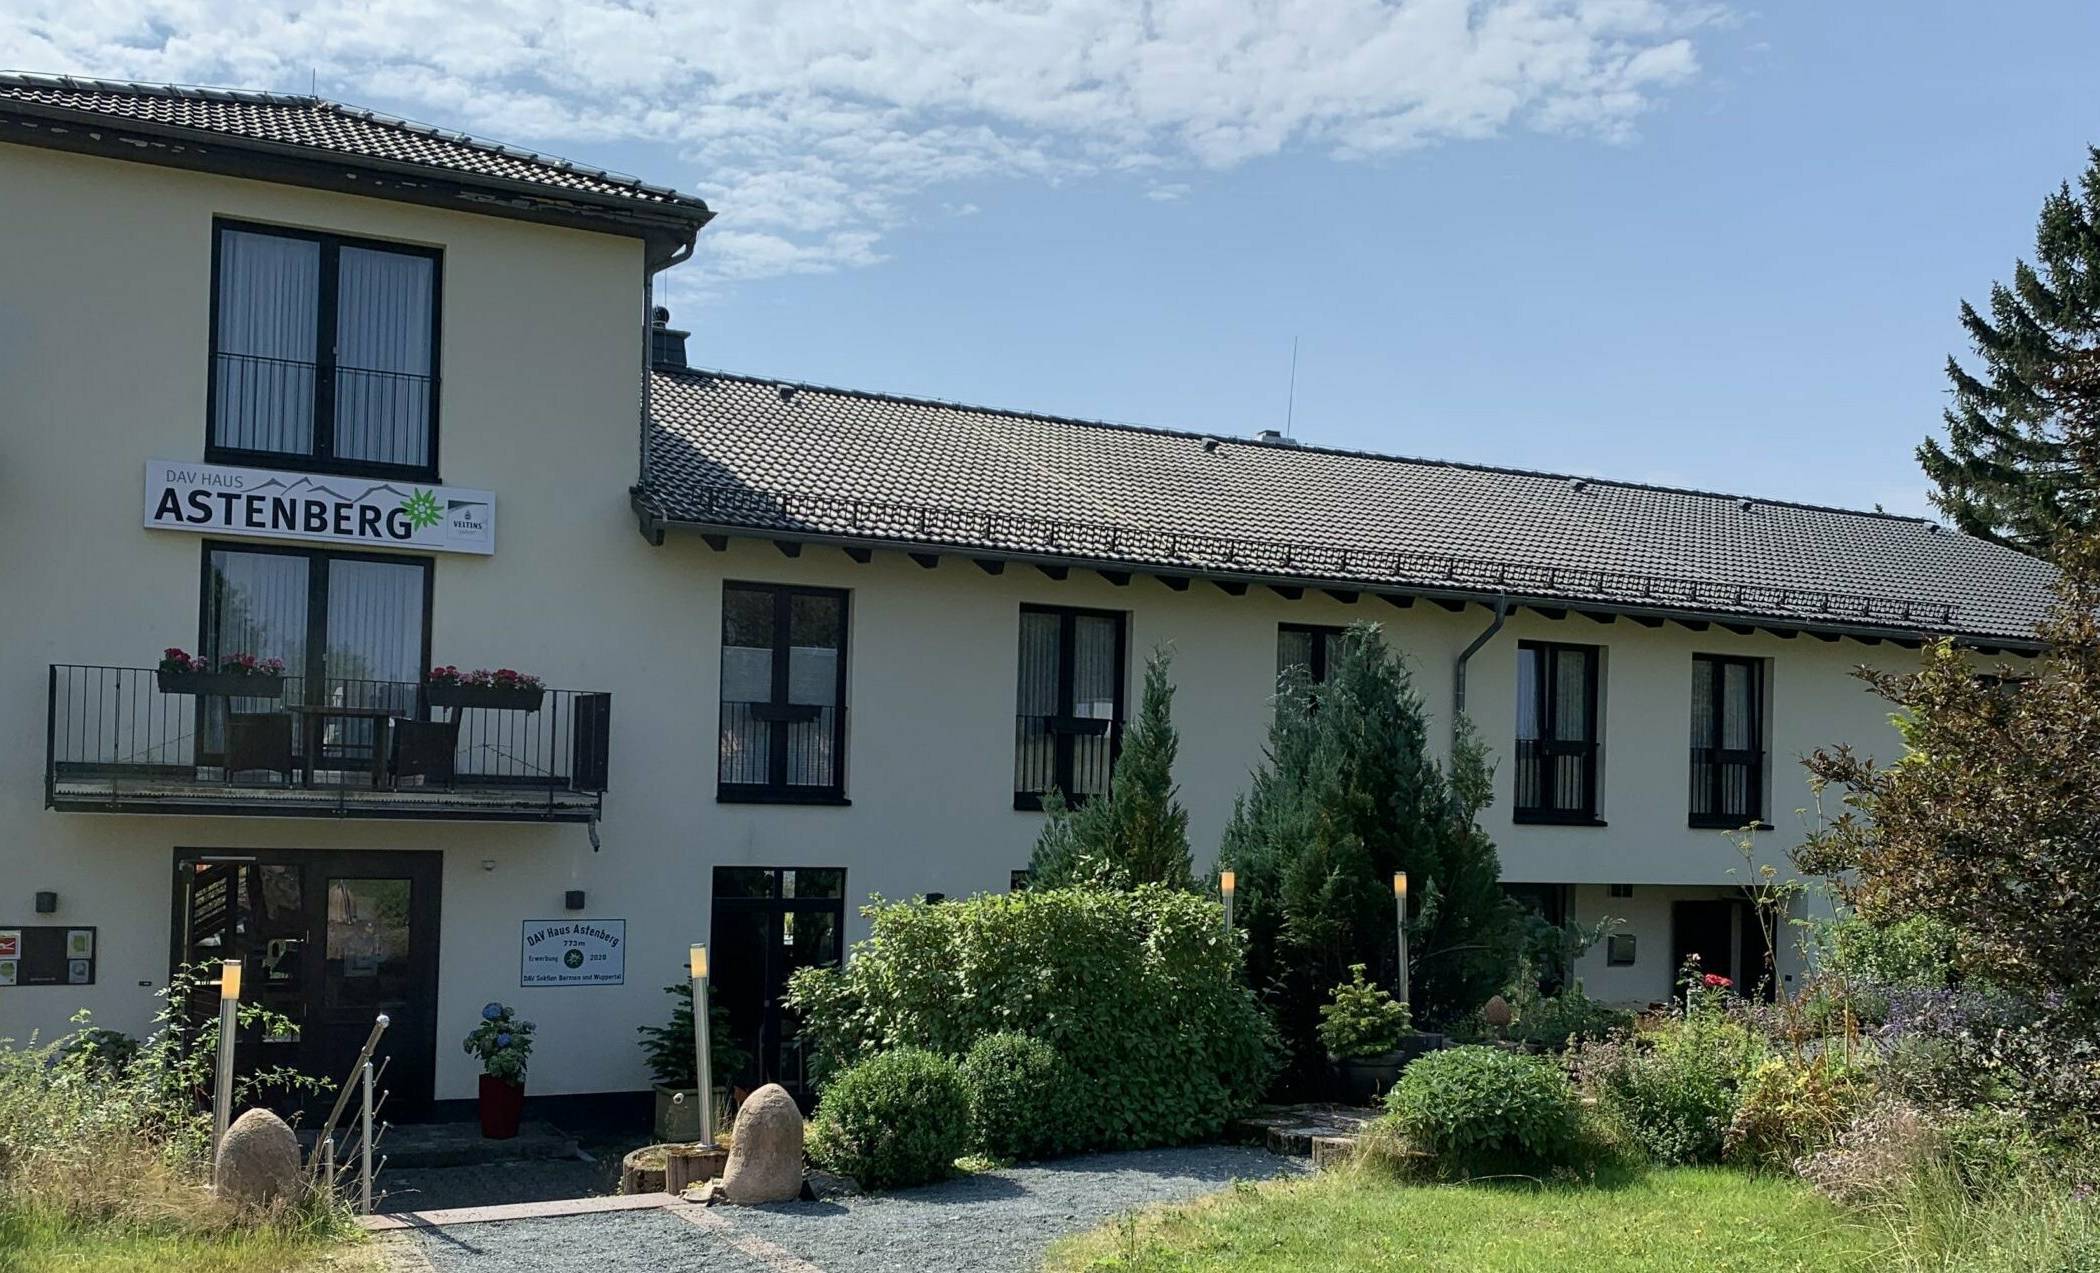  Enttäuschte Hoffnungen: Das Haus Astenberg im Herzen des Tourismus- und Wintersportzentrums im Sauerland bereitet dem Wuppertaler Alpenverein großes Kopfzerbrechen.  